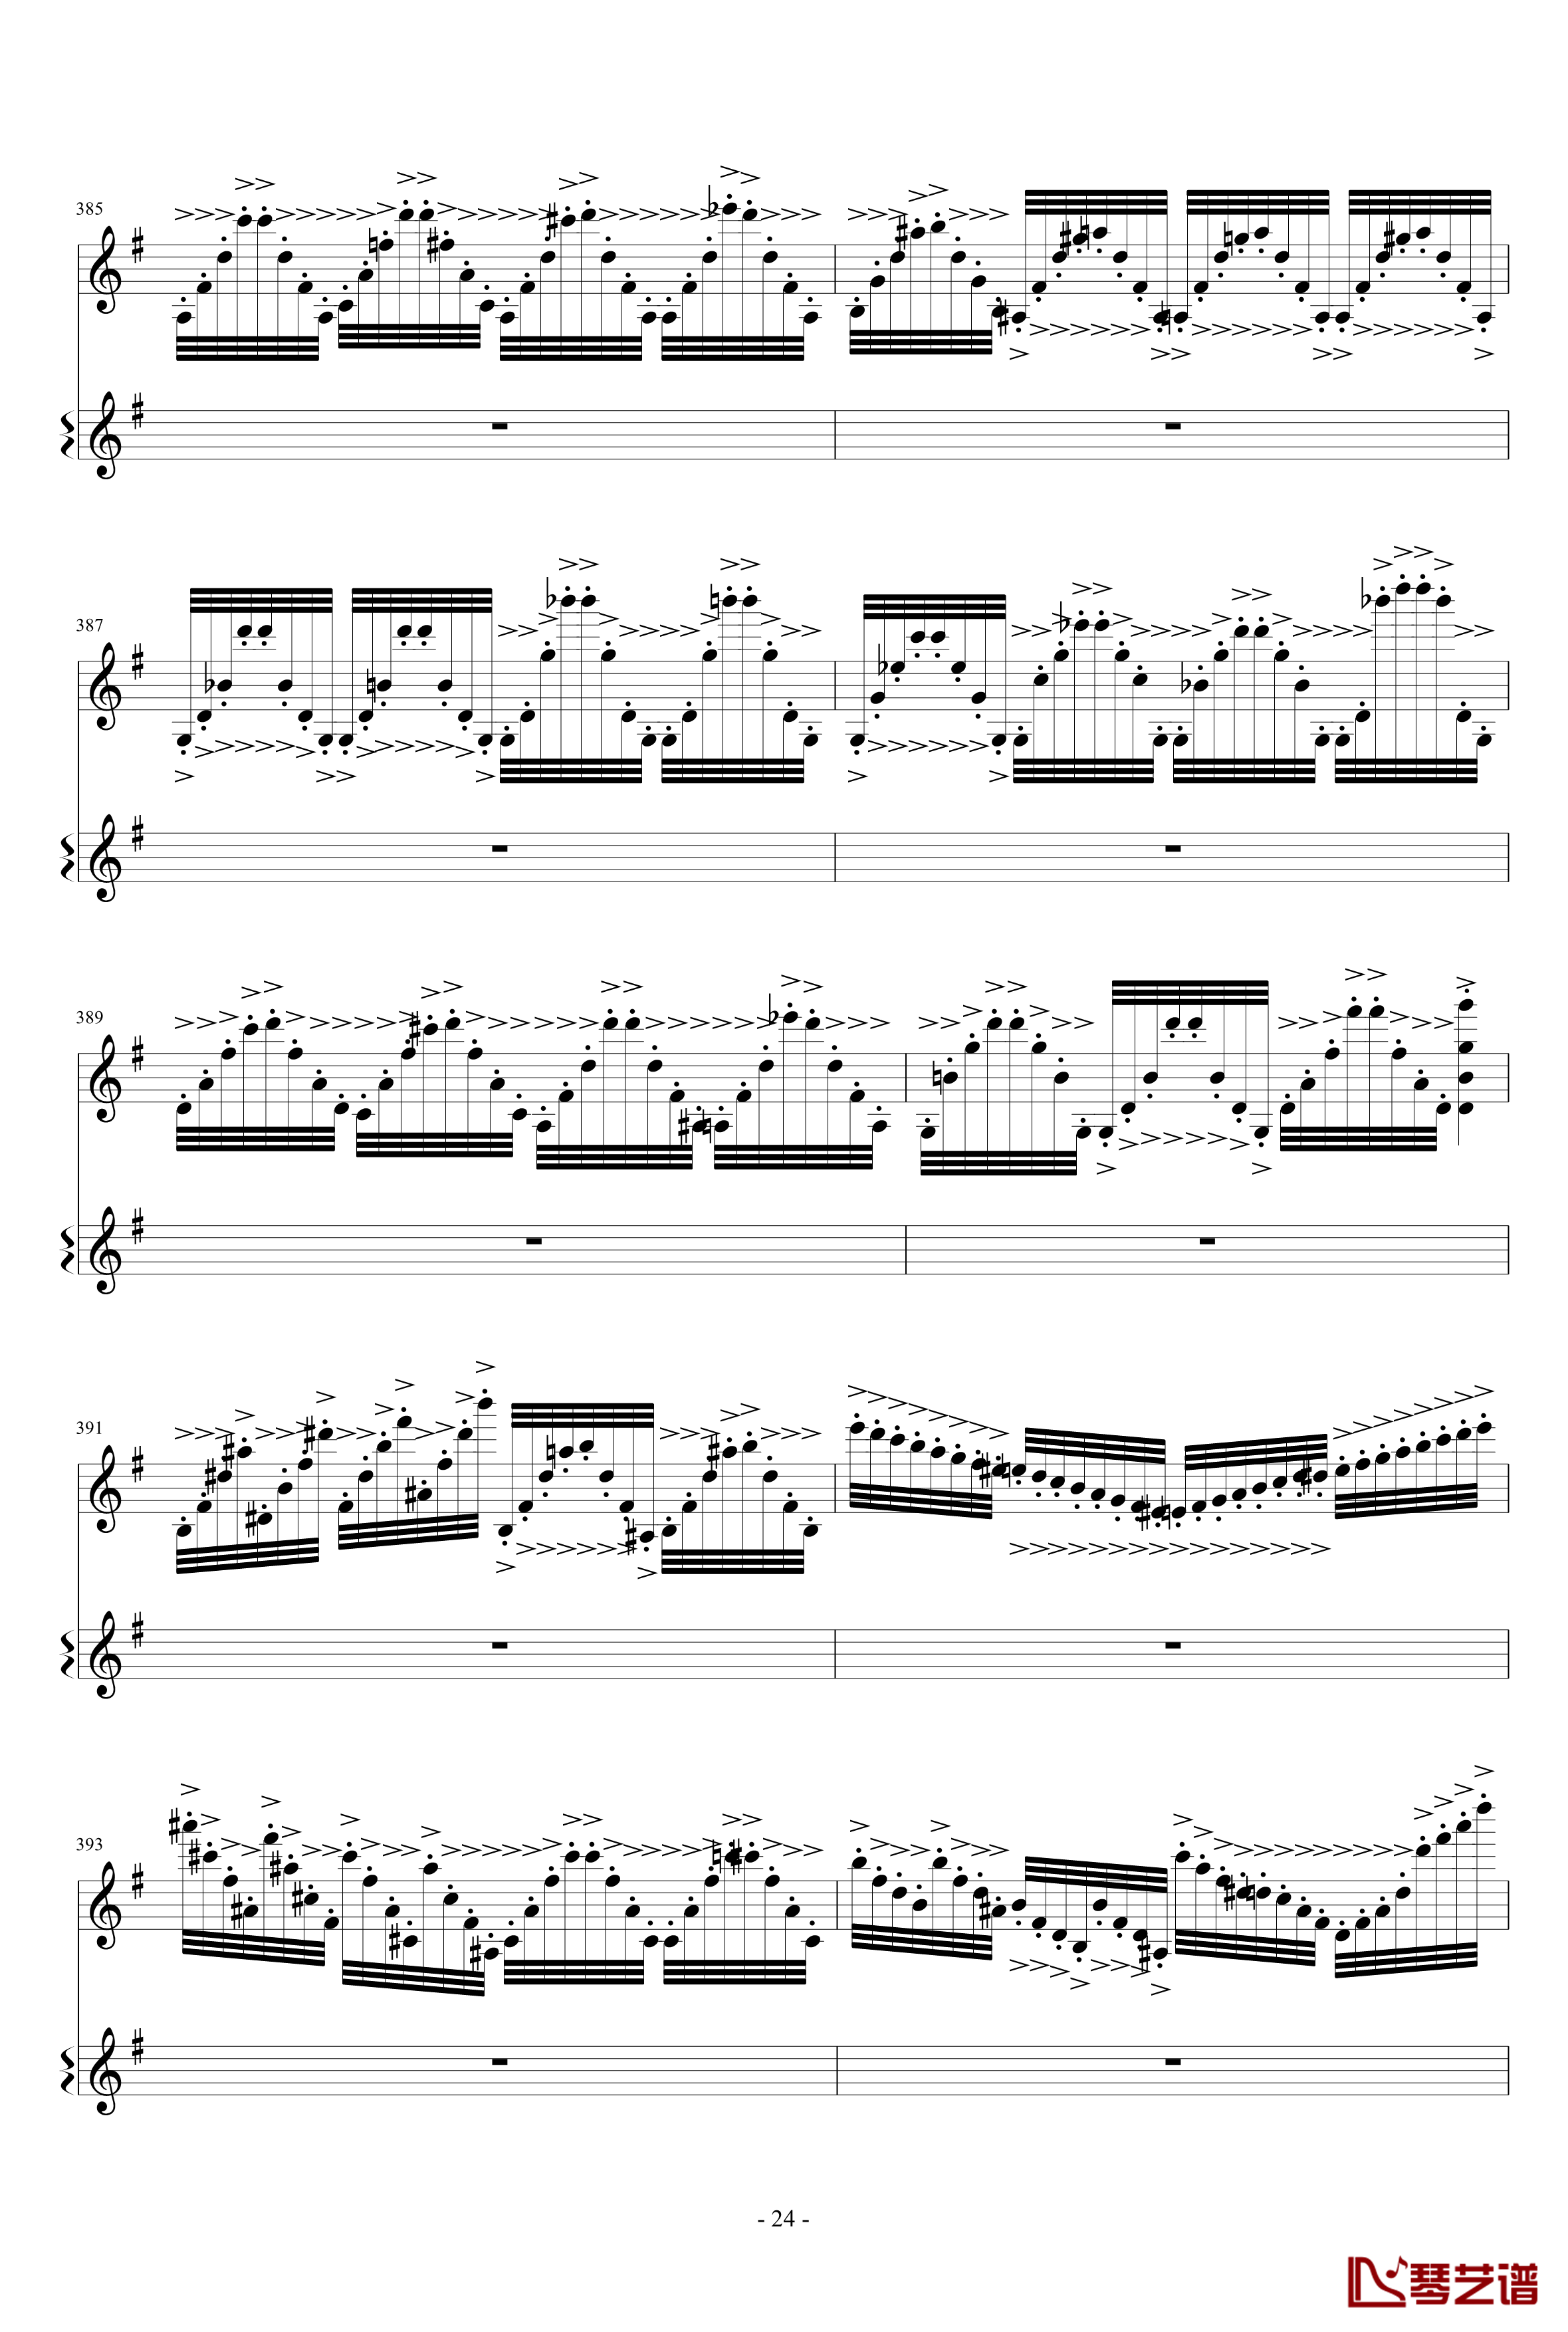 意大利国歌变奏曲钢琴谱-只修改了一个音-DXF24